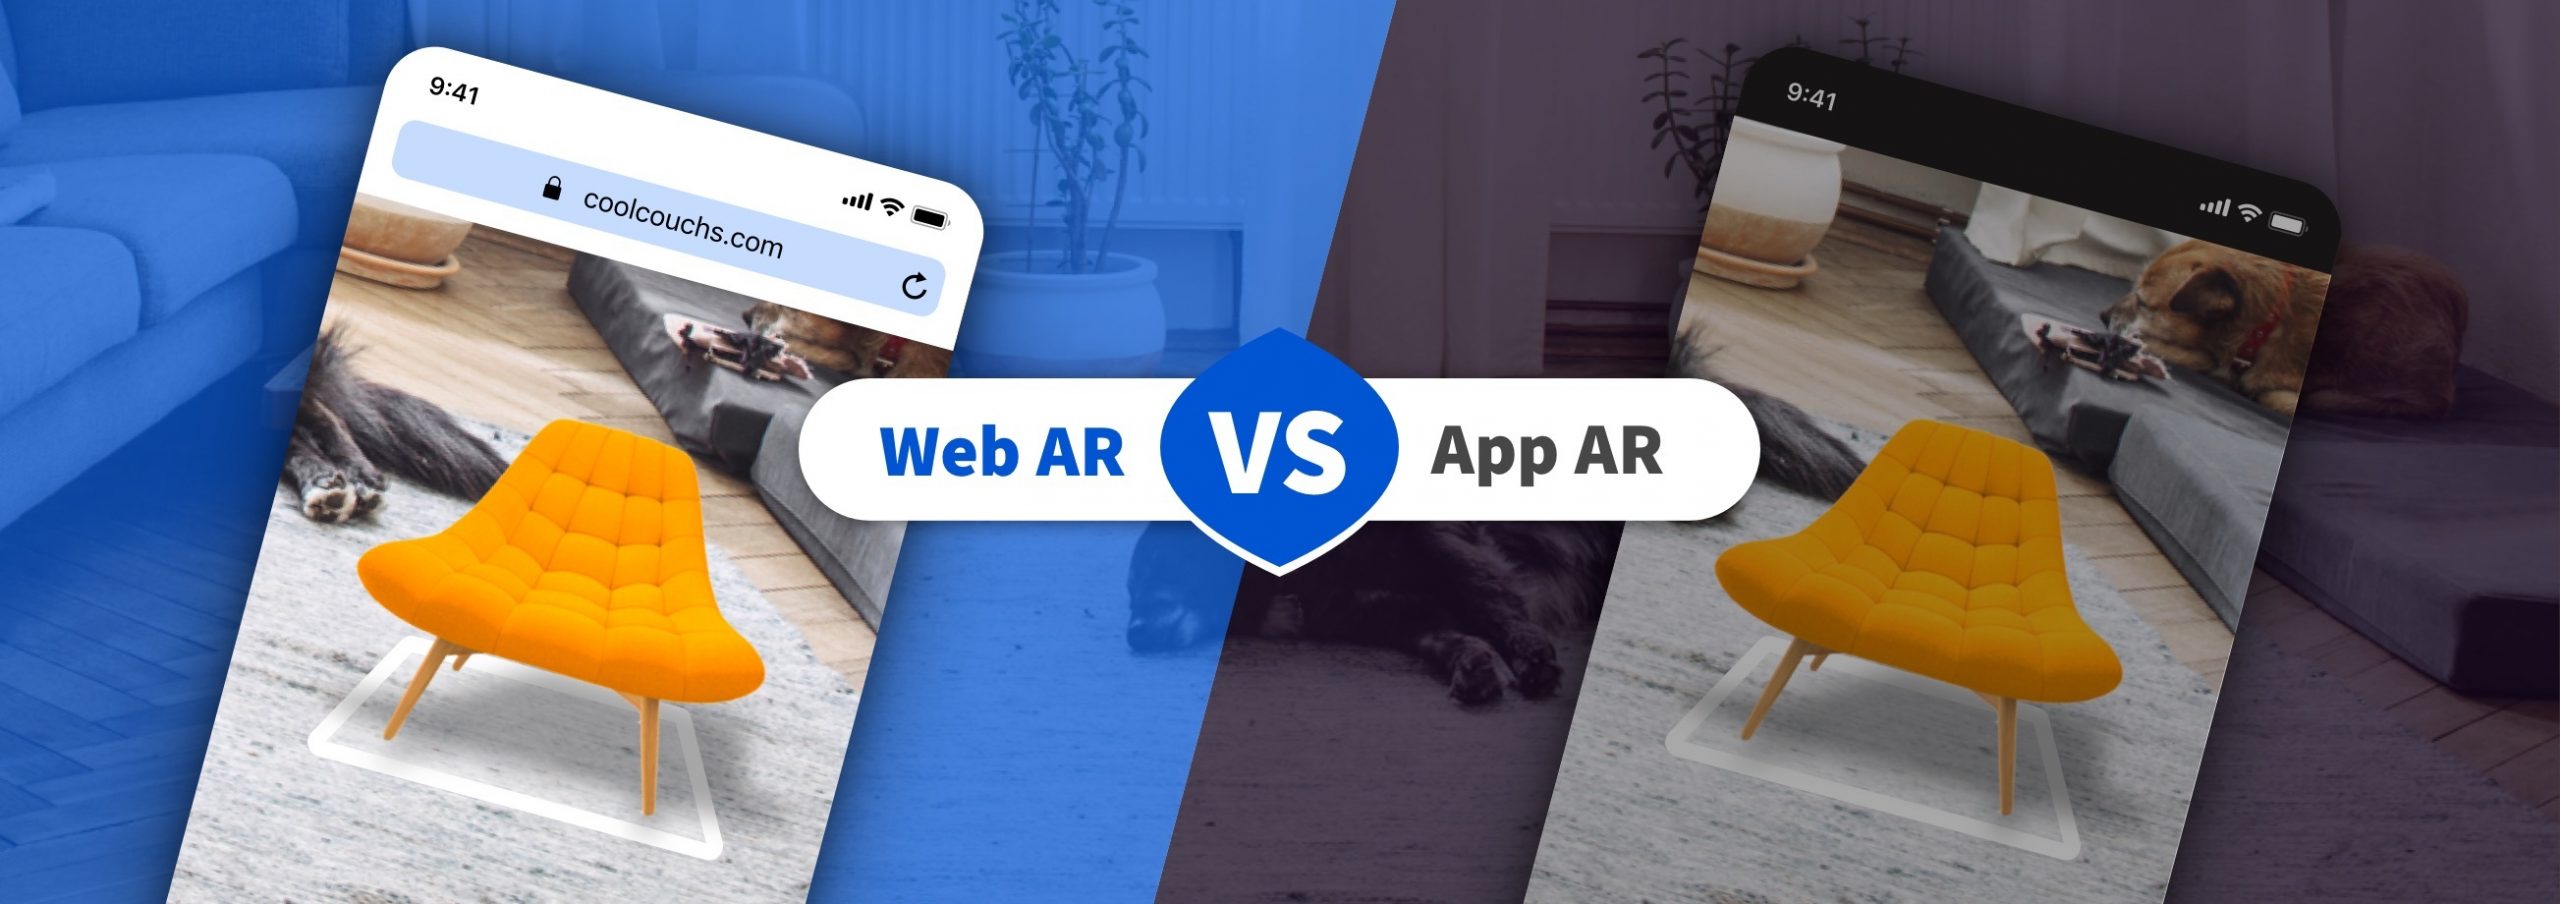 Web AR vs App AR